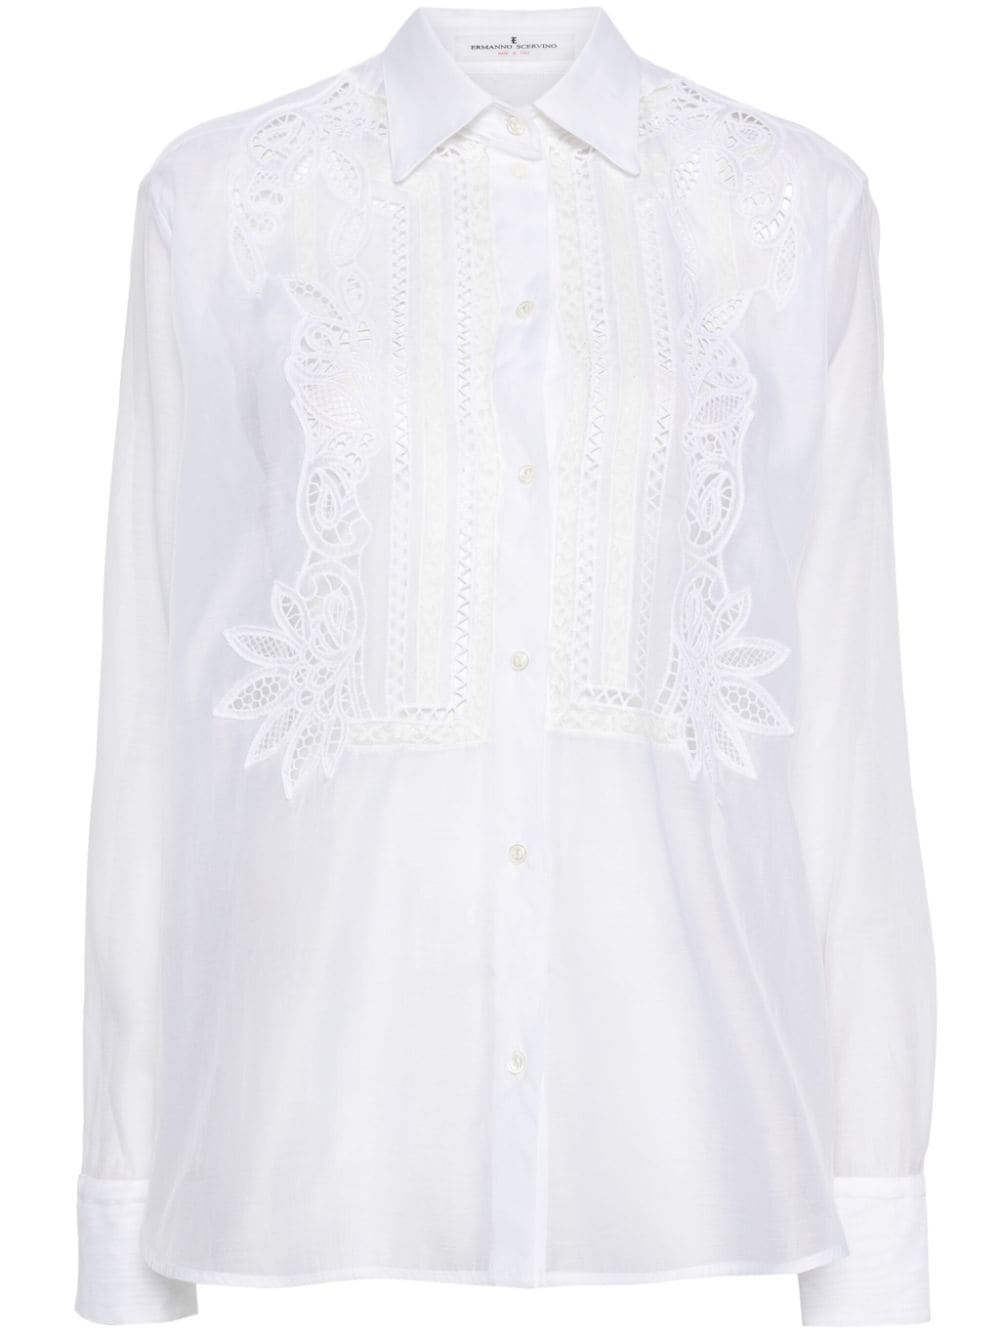 透け感のある白い刺繍コットンシャツ、フローラルカットアウトディテール付き